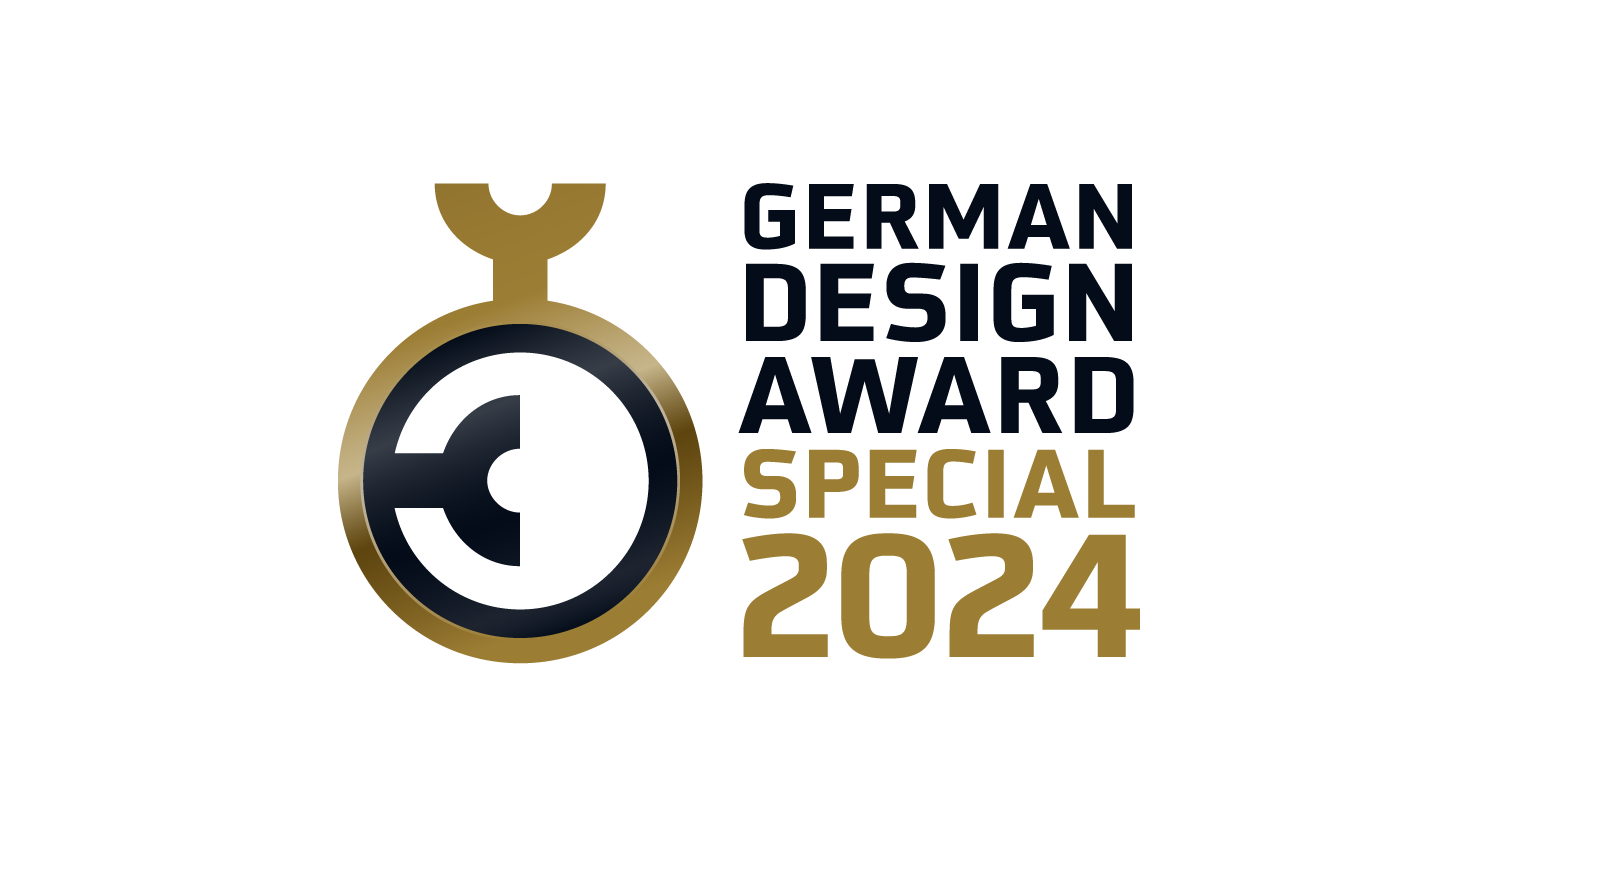 德國設計獎 German Design Award Special Mention